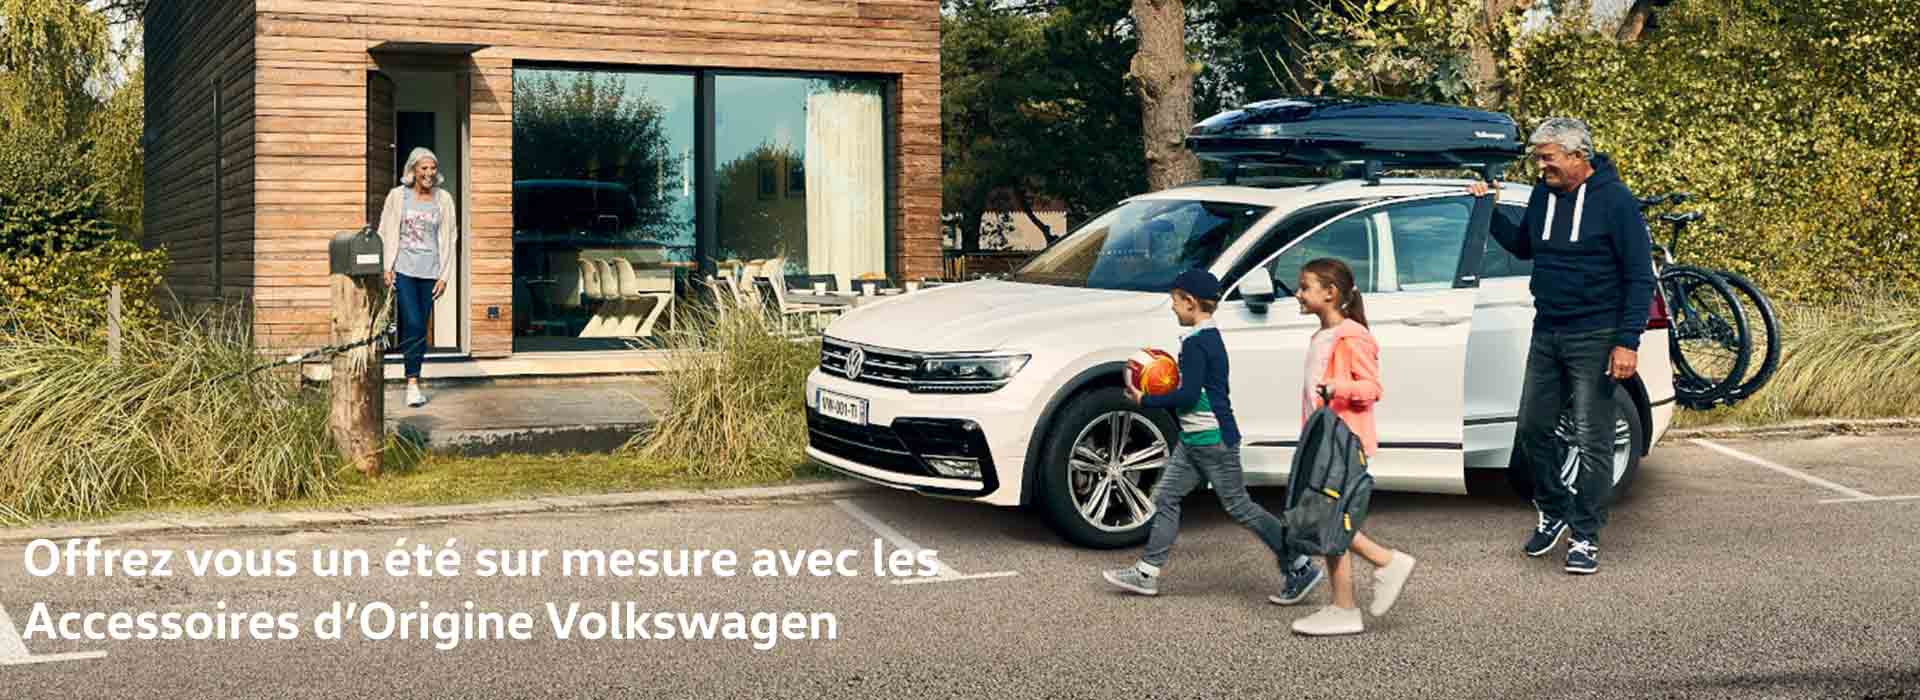 Accessoires d'origine Volkswagen